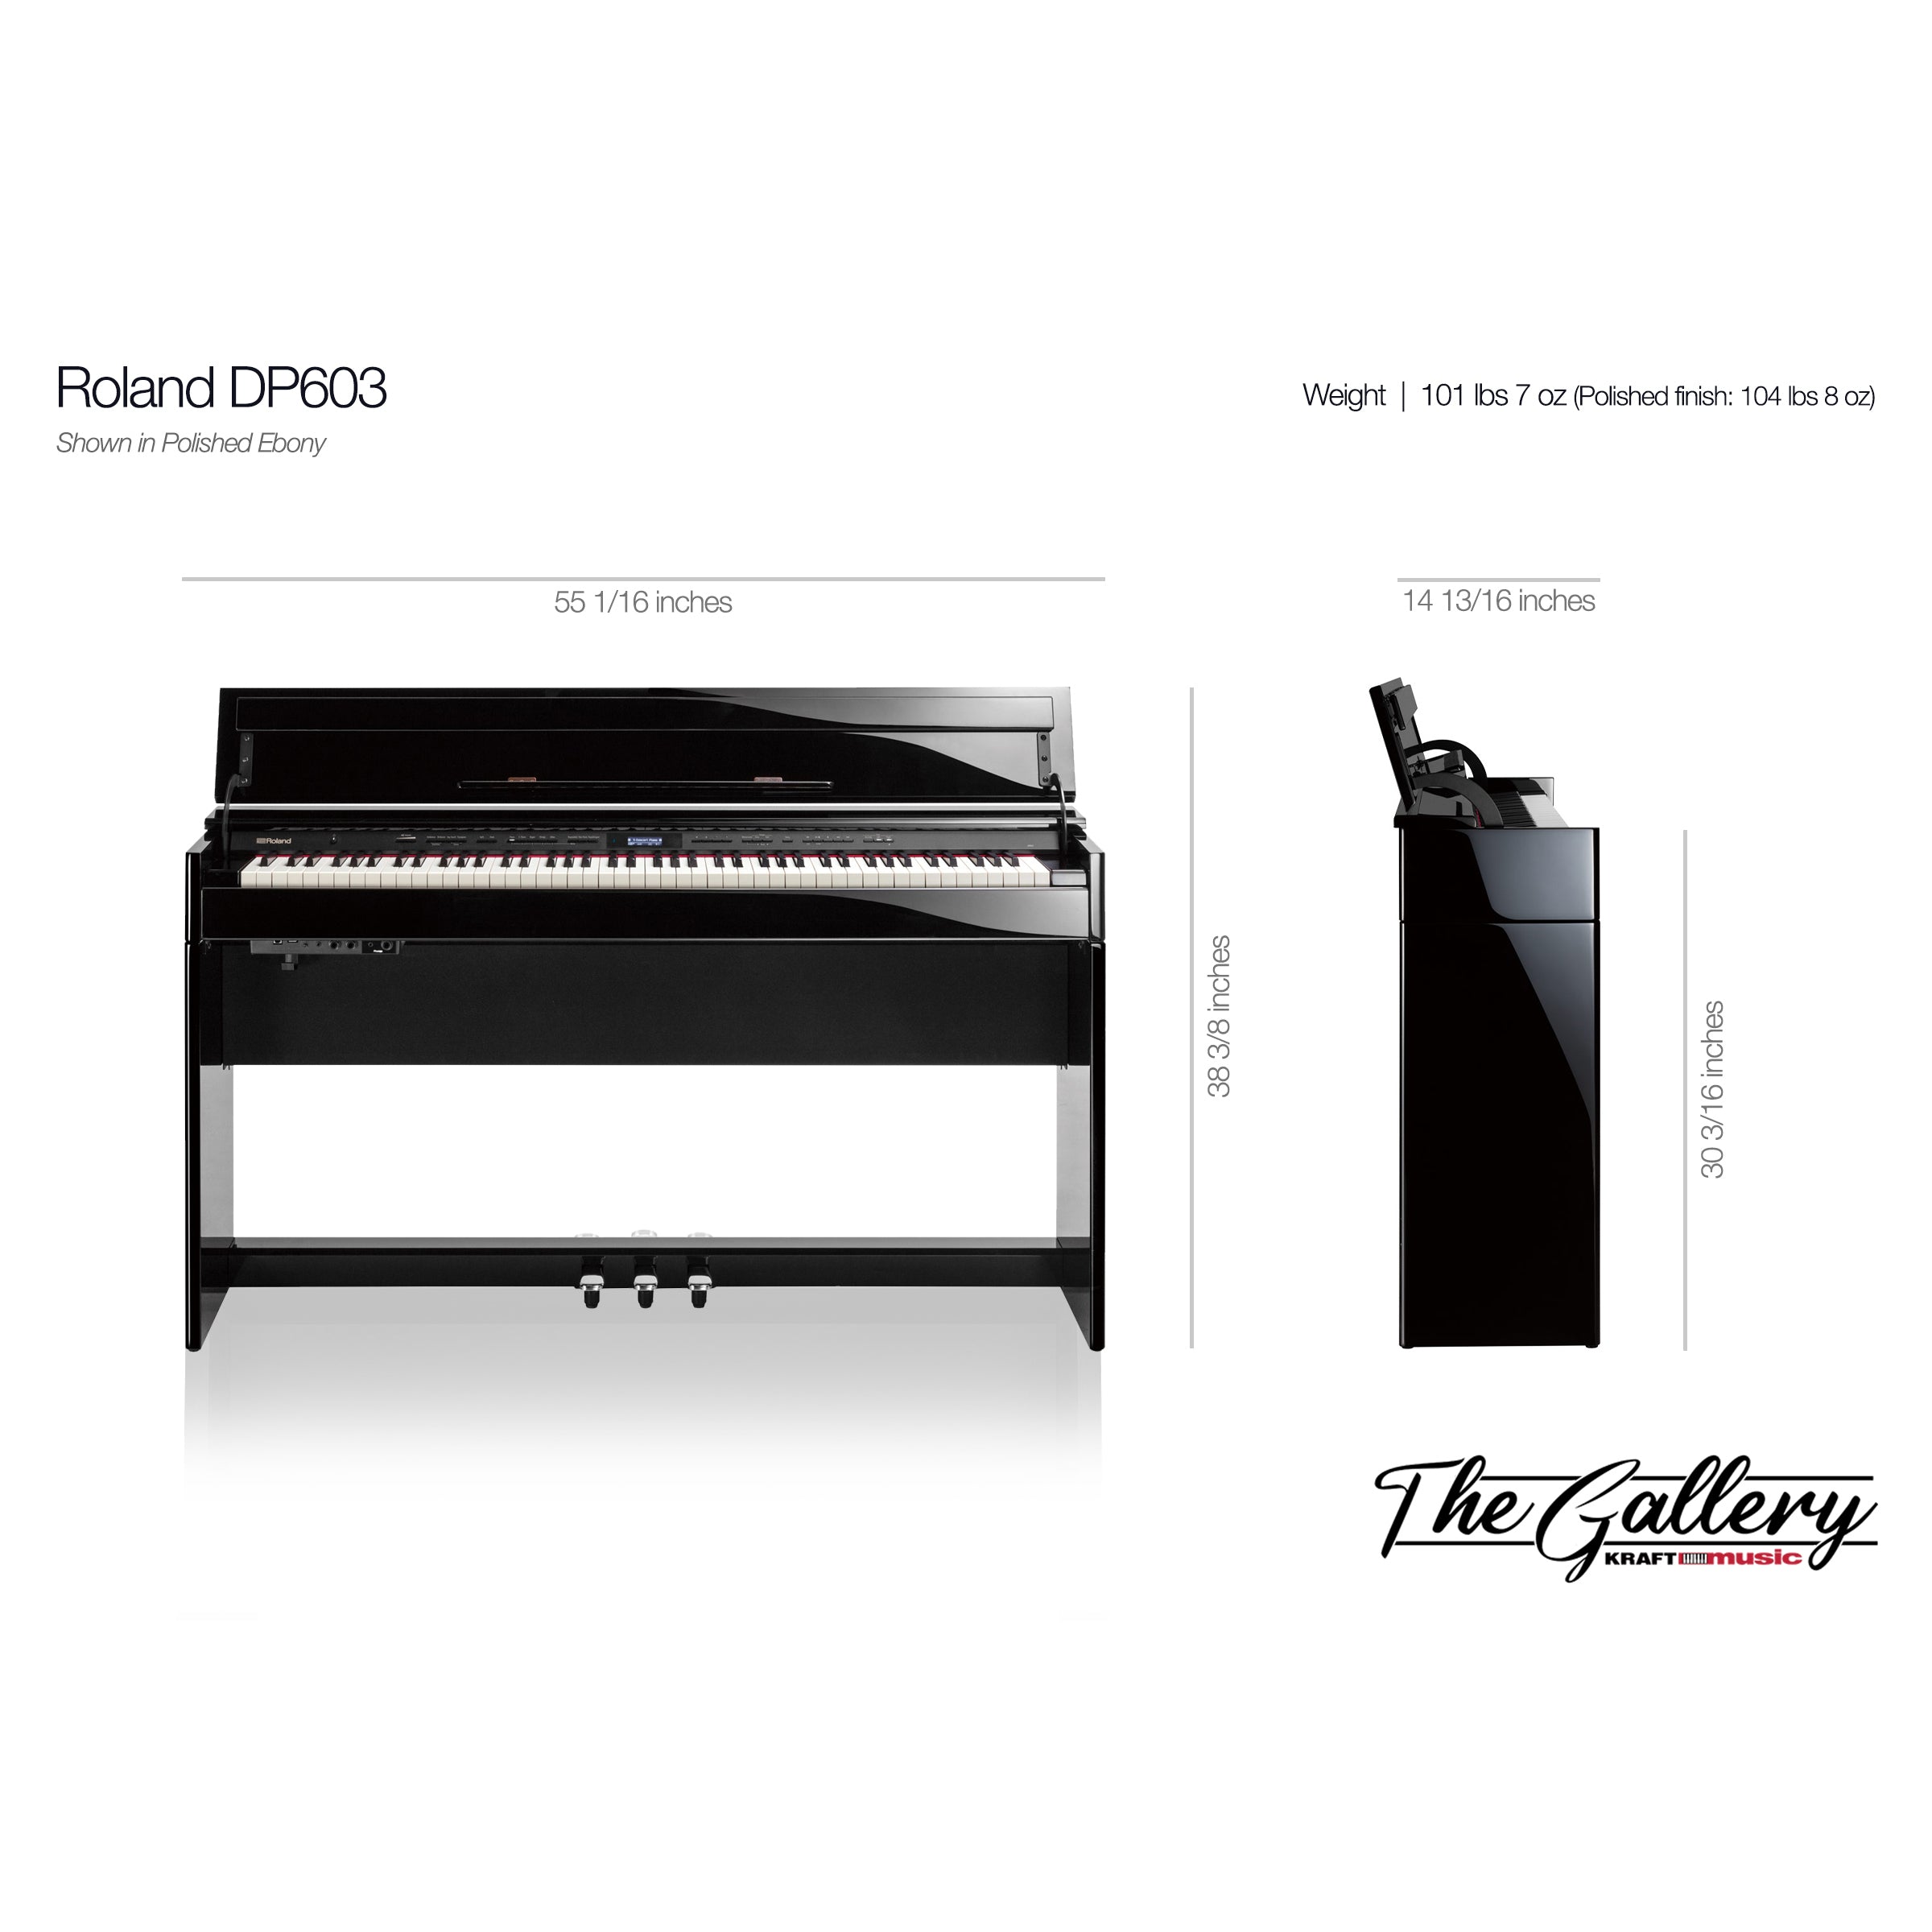 Roland DP603 Digital Piano - Contemporary Black